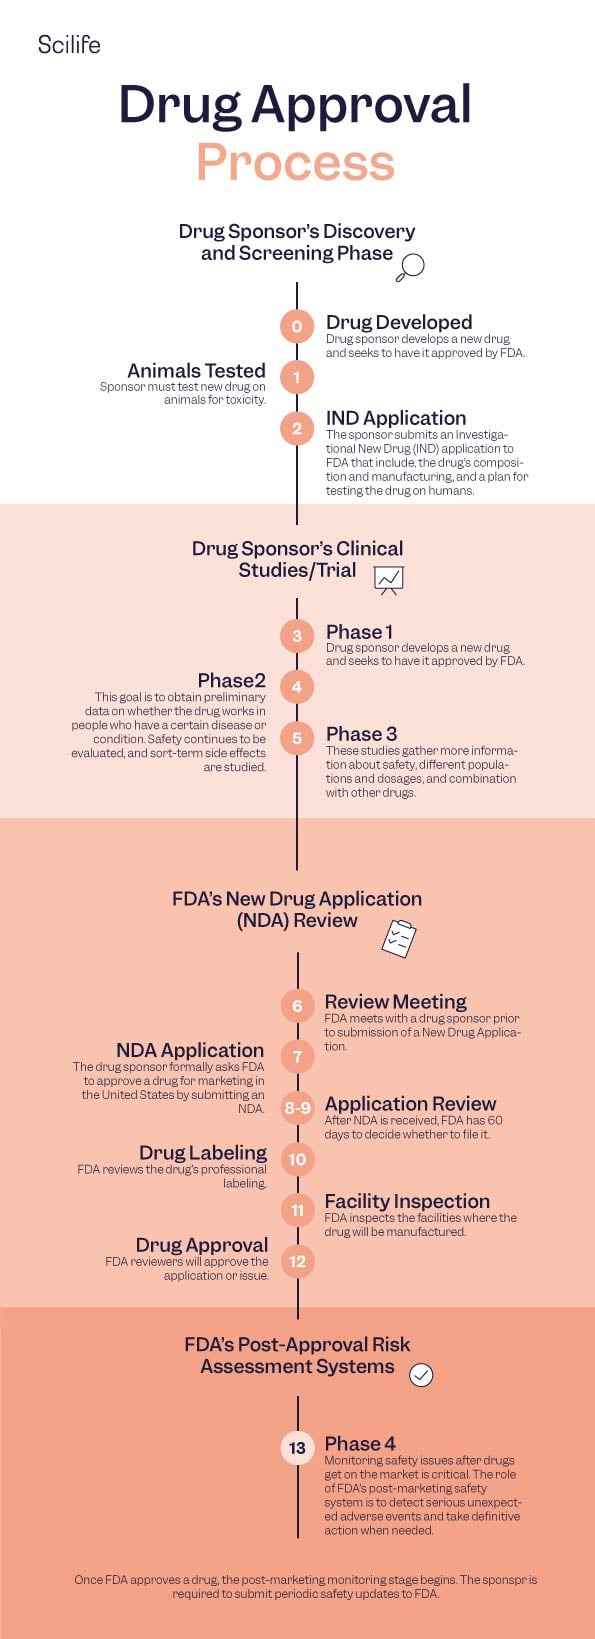 FDA-guide-info01-all